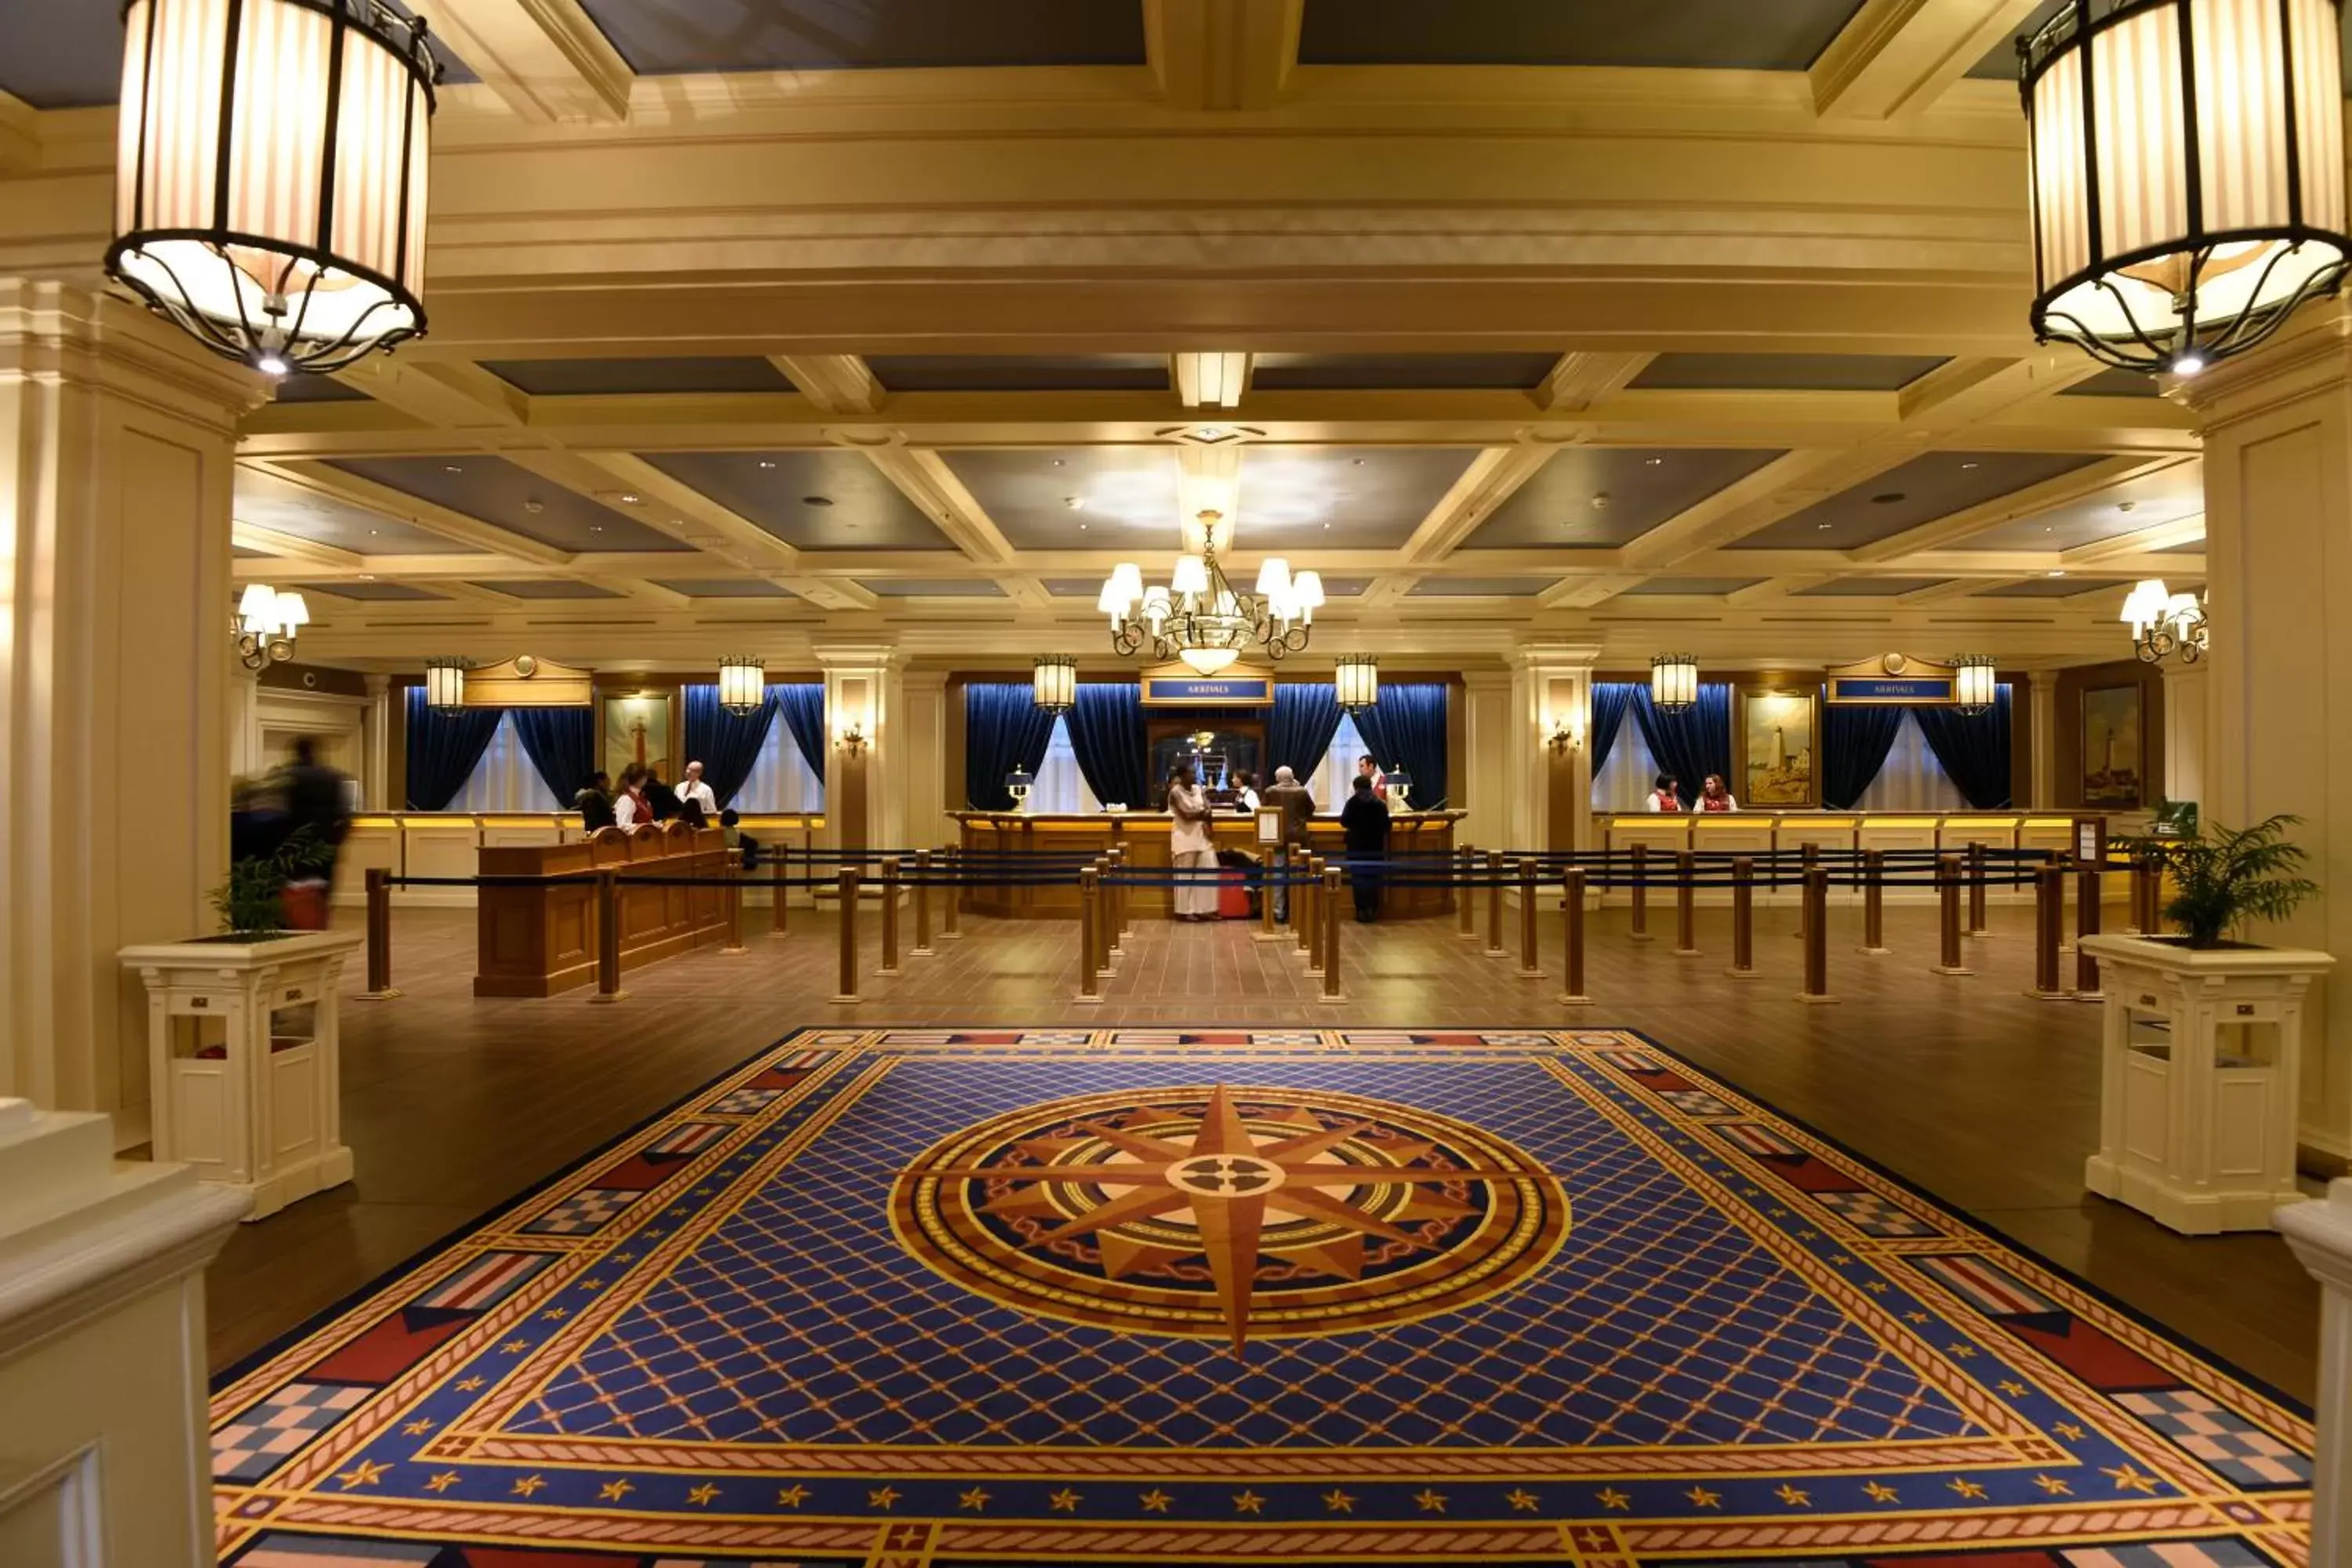 Lobby or reception in Disney Newport Bay Club